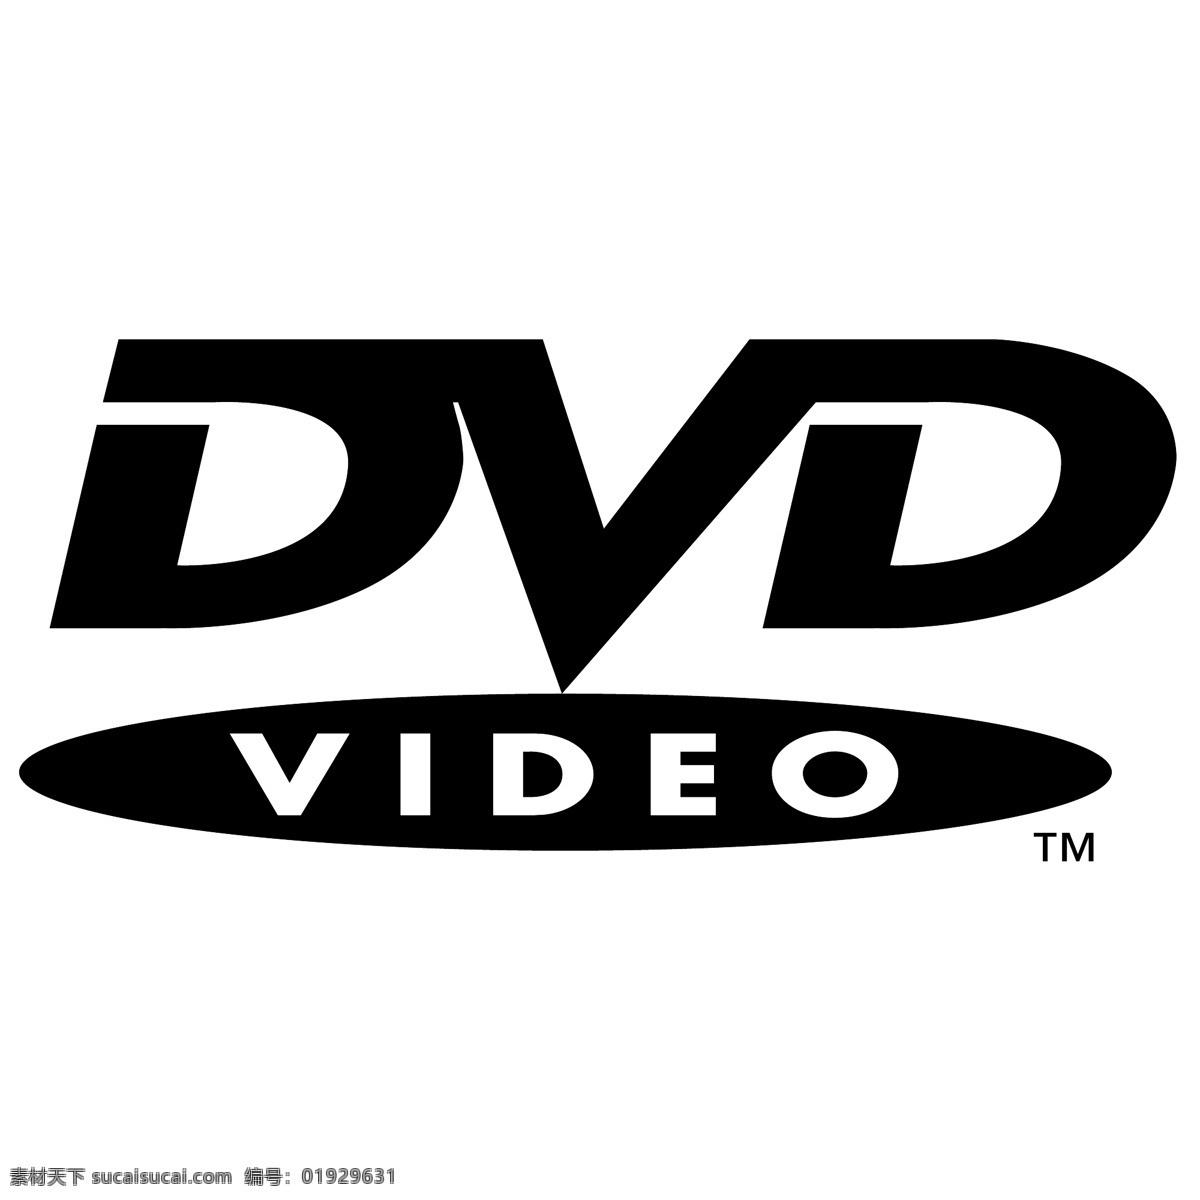 dvd 视频 矢量标志下载 免费矢量标识 商标 品牌标识 标识 矢量 免费 品牌 公司 白色